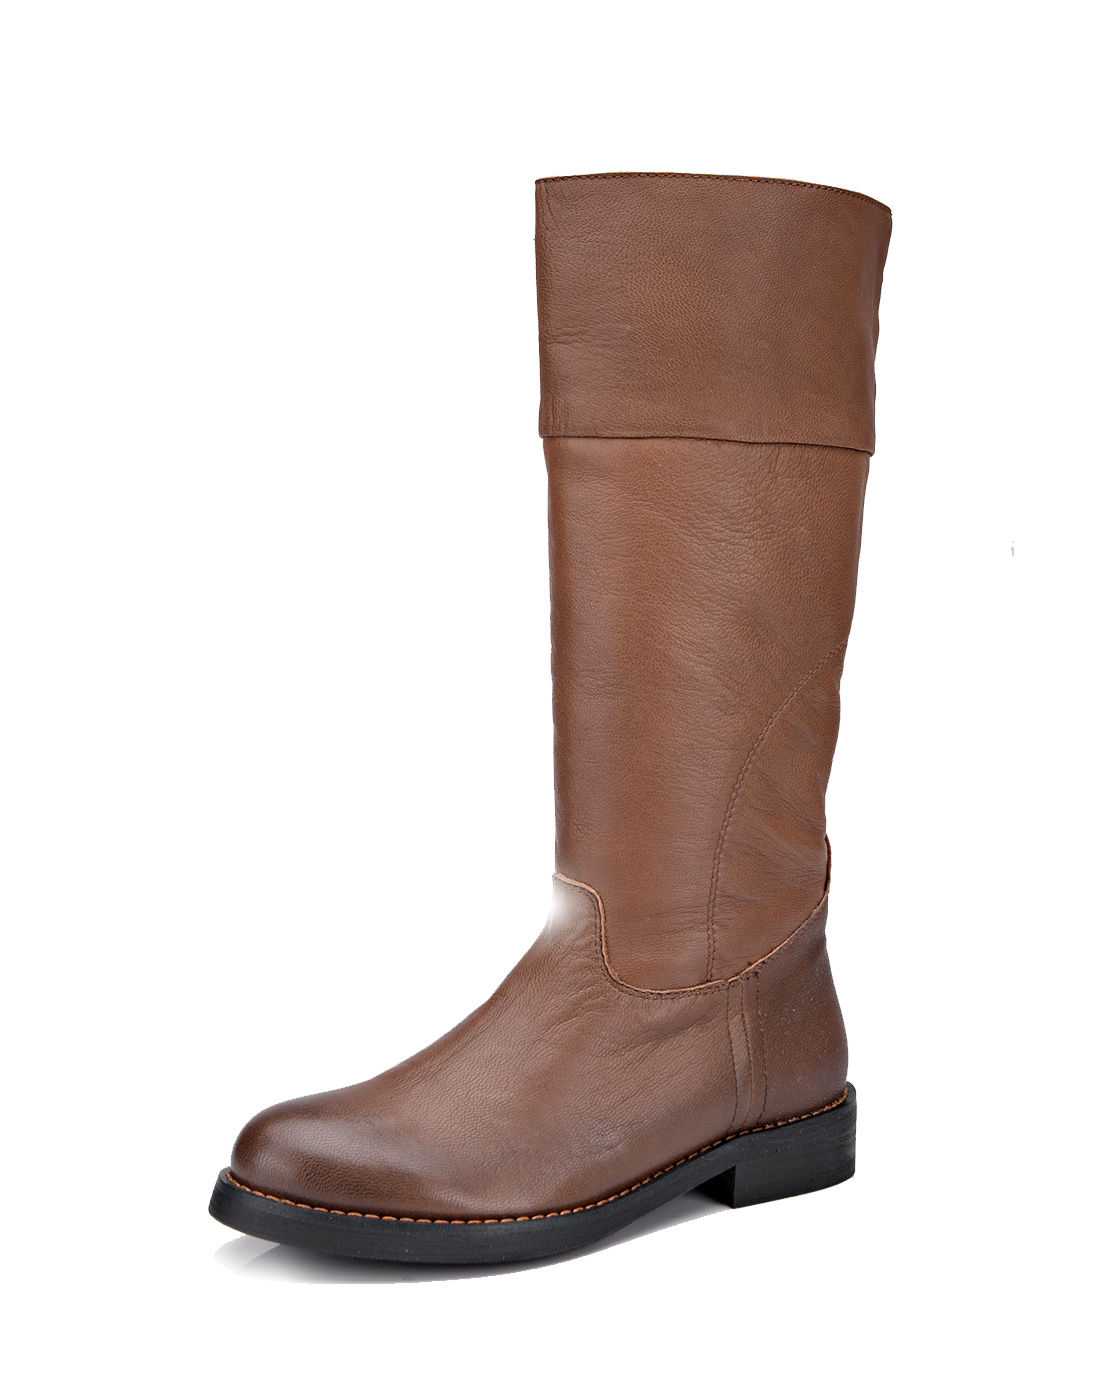 布波堡 2015新款秋冬浅啡军旅风复古羊皮中跟长靴 专柜真皮正品